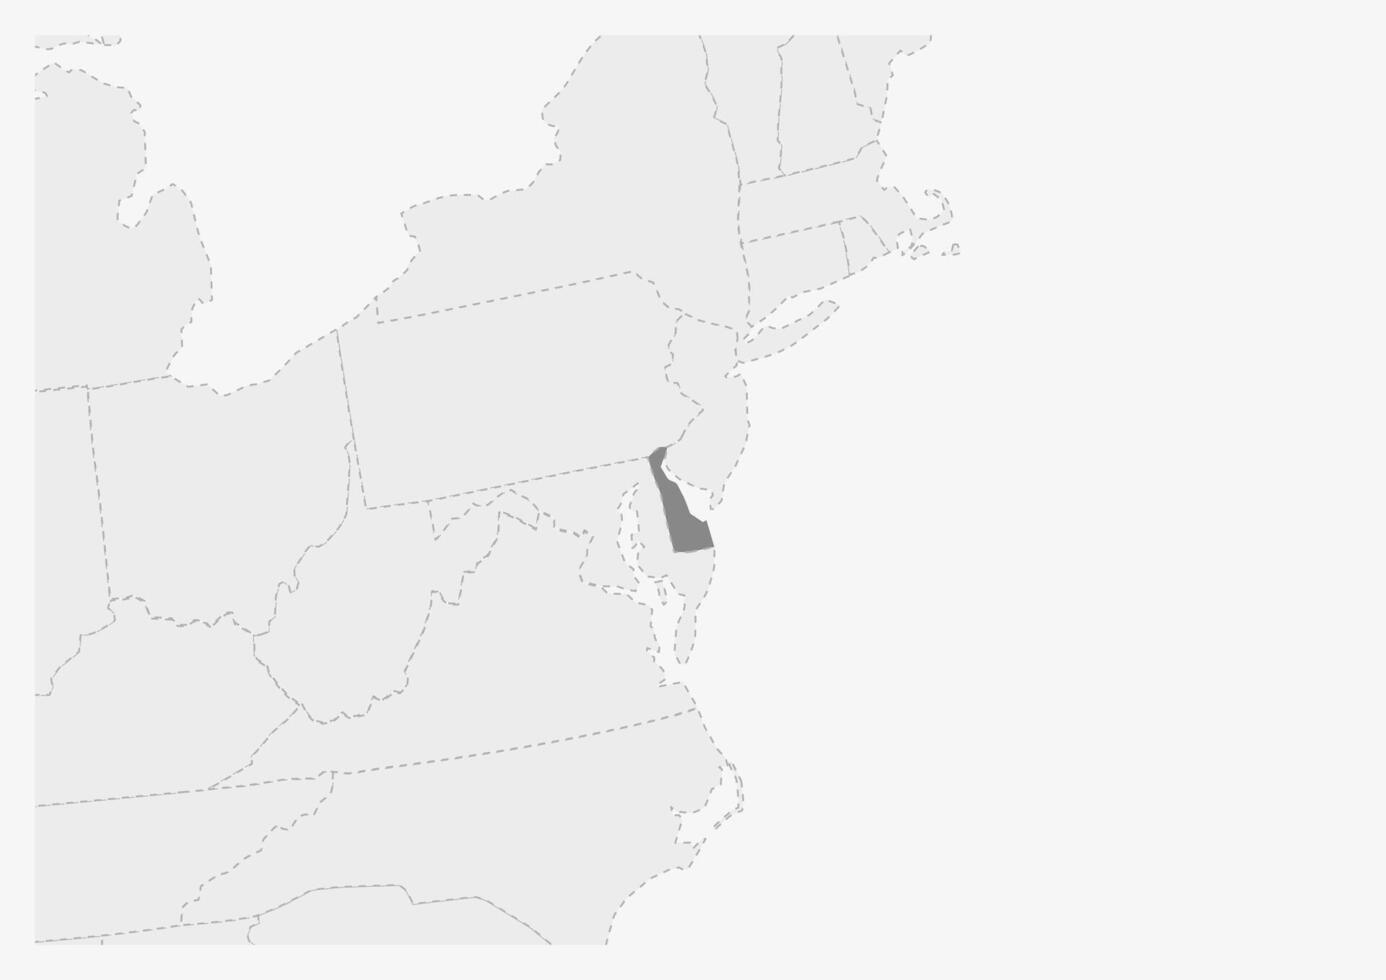 Karte von USA mit hervorgehoben Delaware Zustand Karte vektor